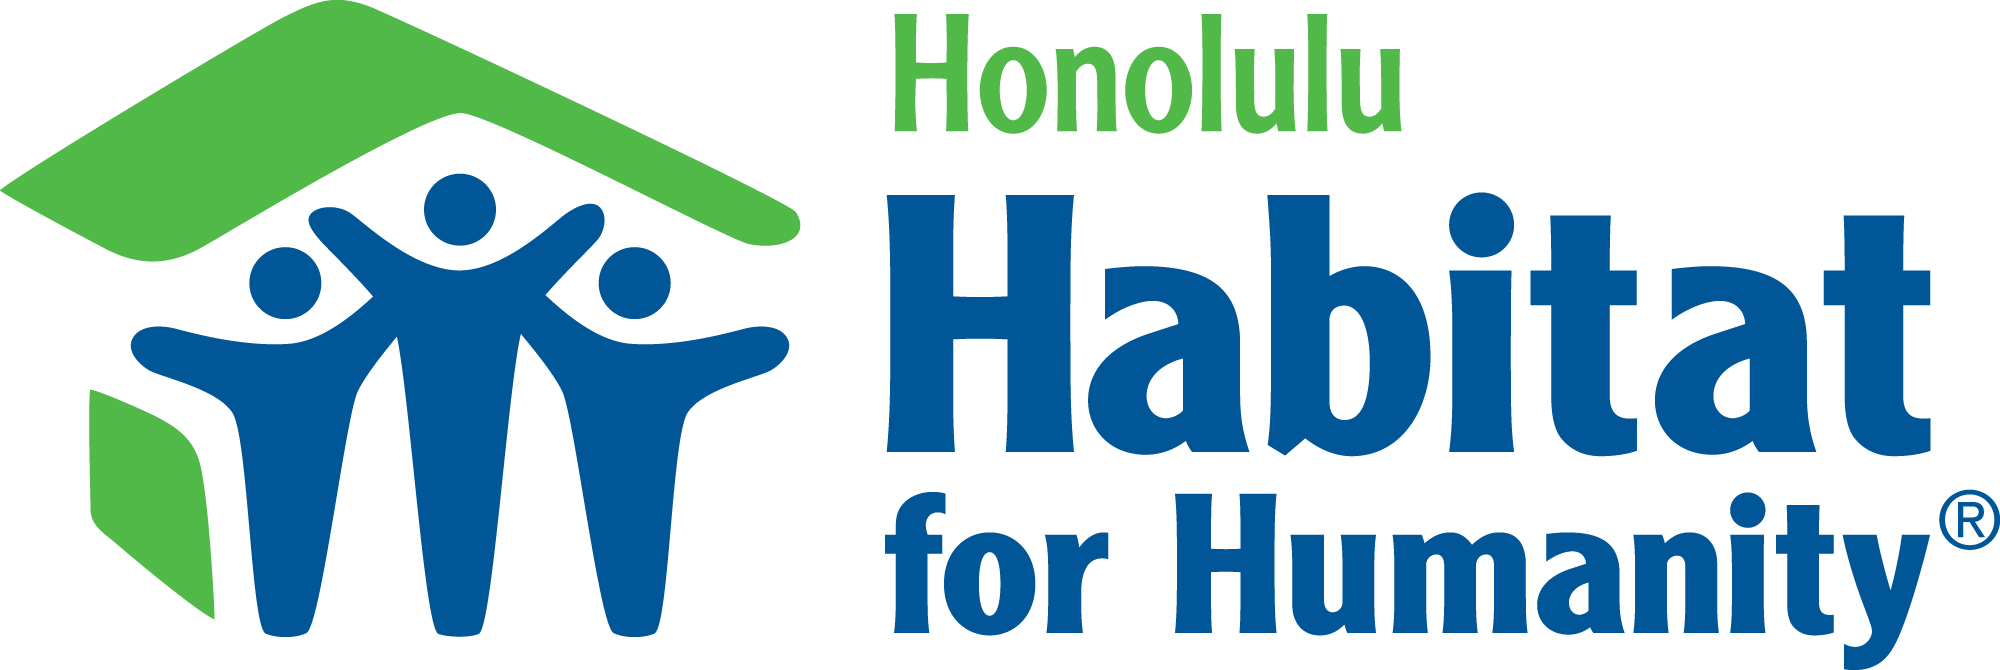 Honolulu_Hz_2clr .png